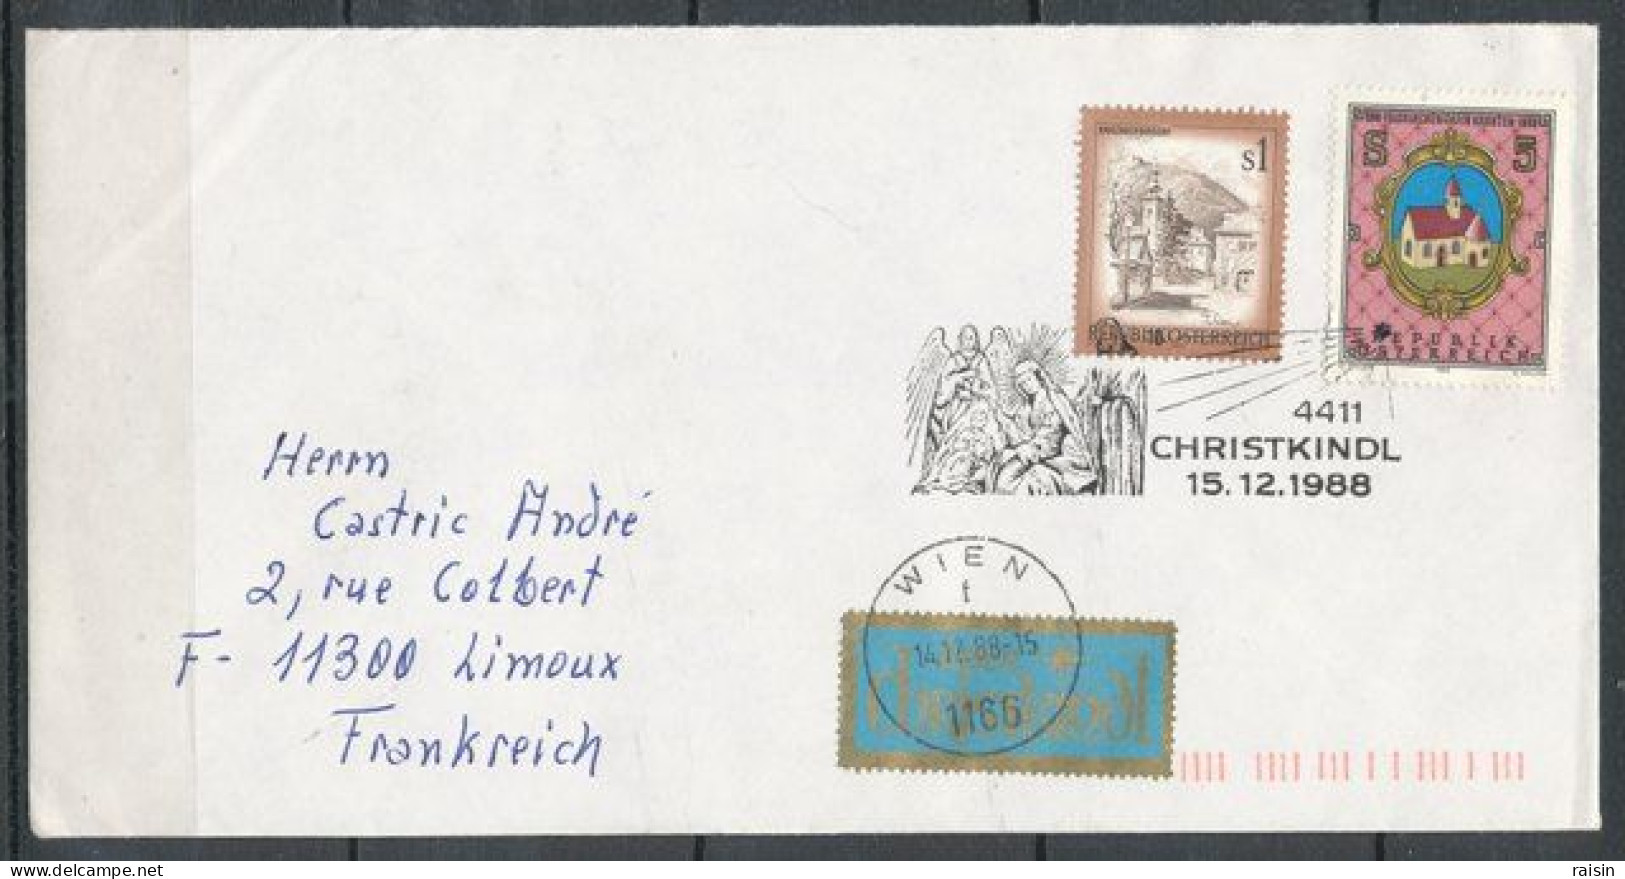 Autriche 1988, 1994, 1996 Oblitérations Kristkindl Sur Enveloppes Ayant Circulé - Storia Postale